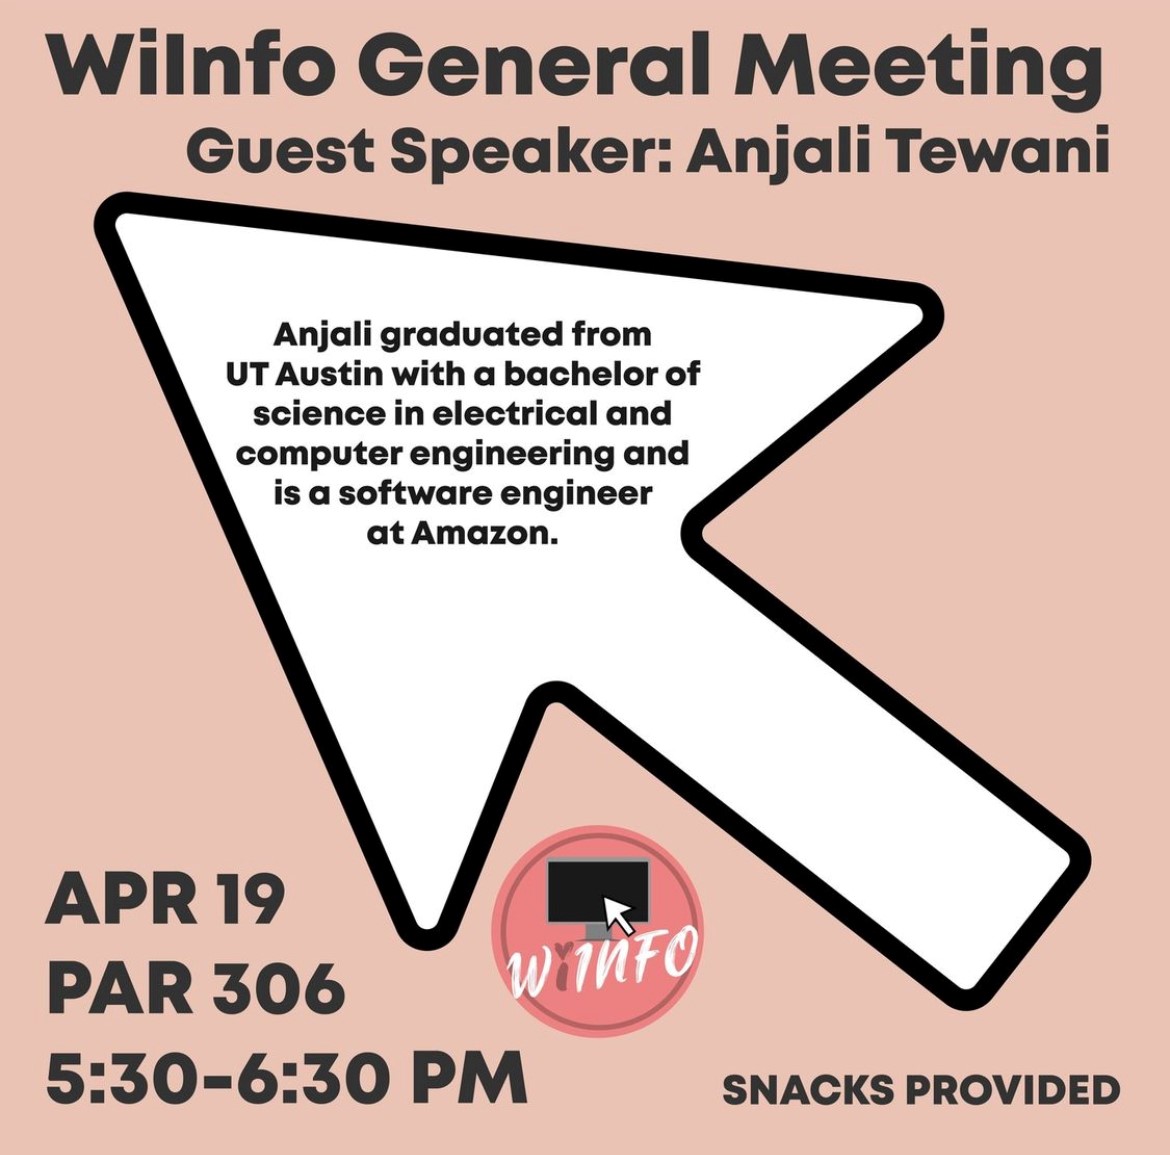 WiInfo General Meeting